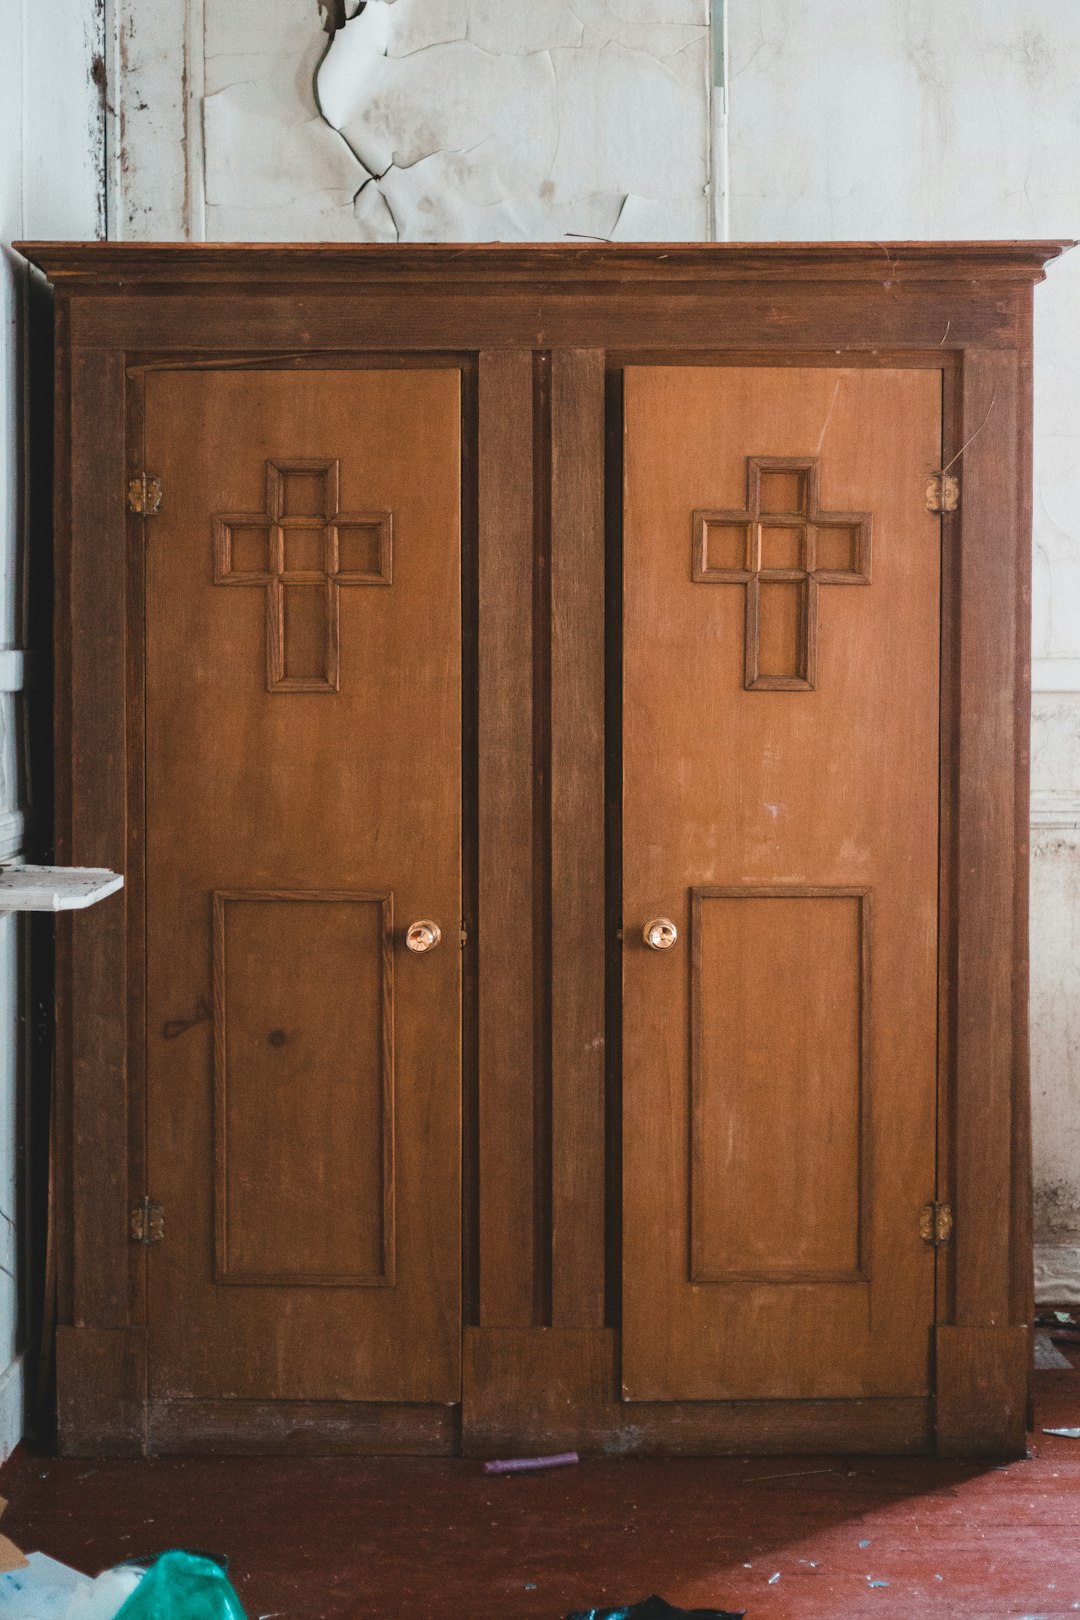  brown wooden door with white door lever cupboard